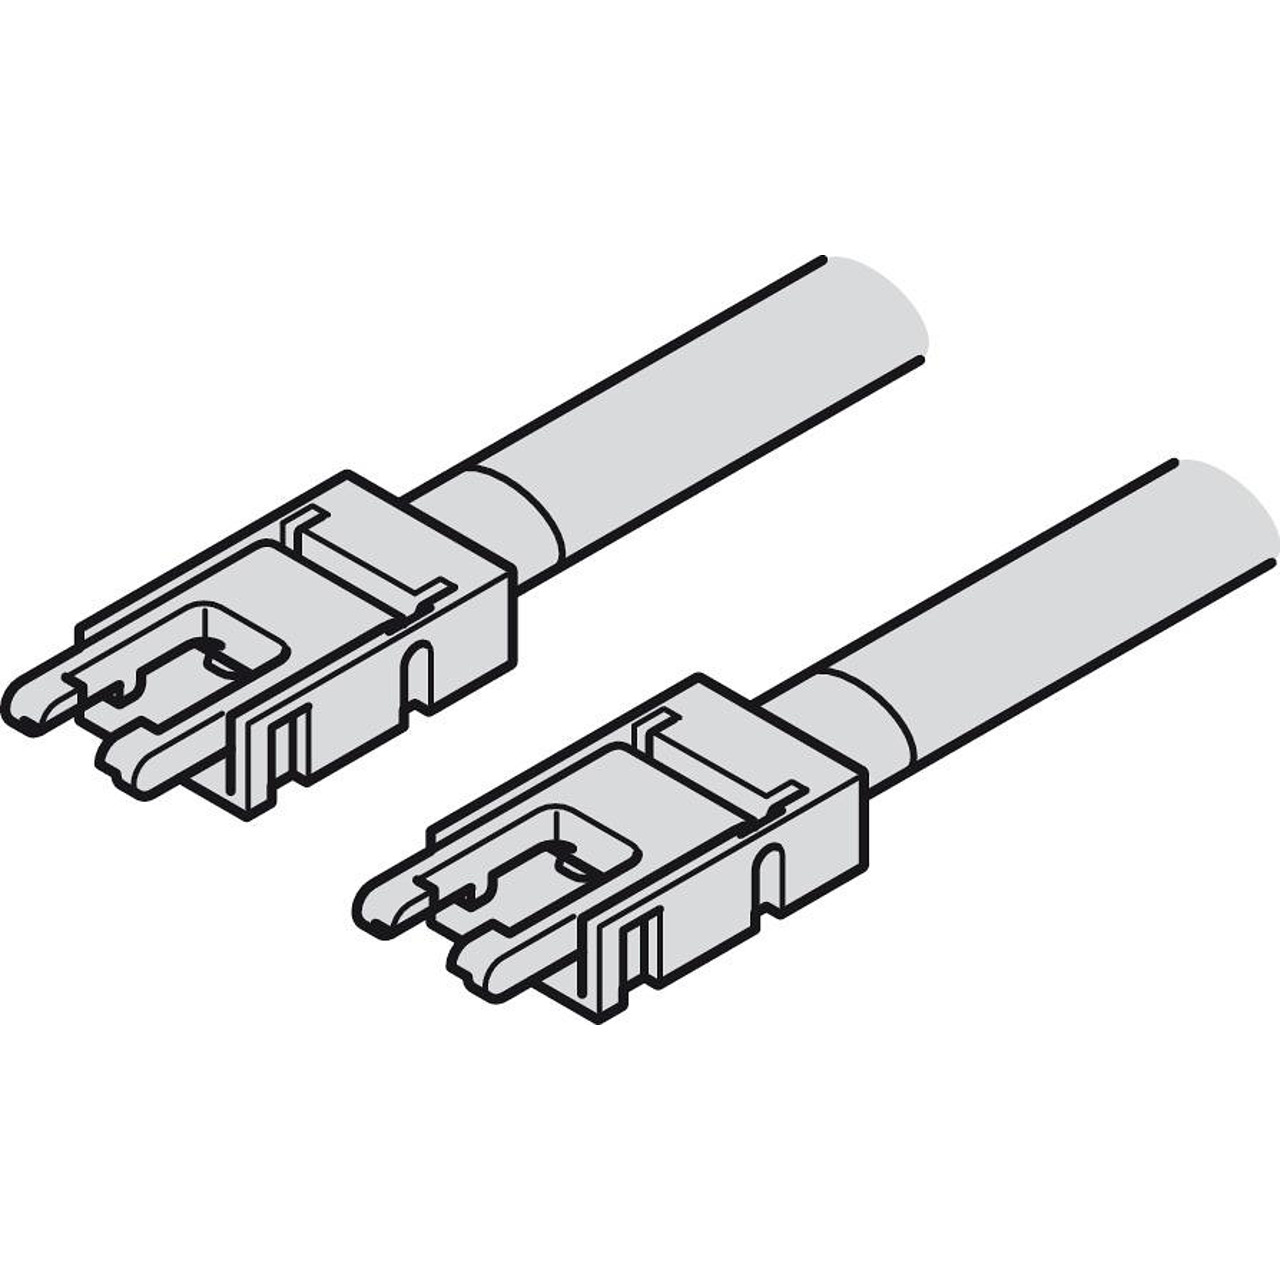 Свързващ конектор LOOX 5, лента- лента, 50 mm , за лента 8 mm монохром